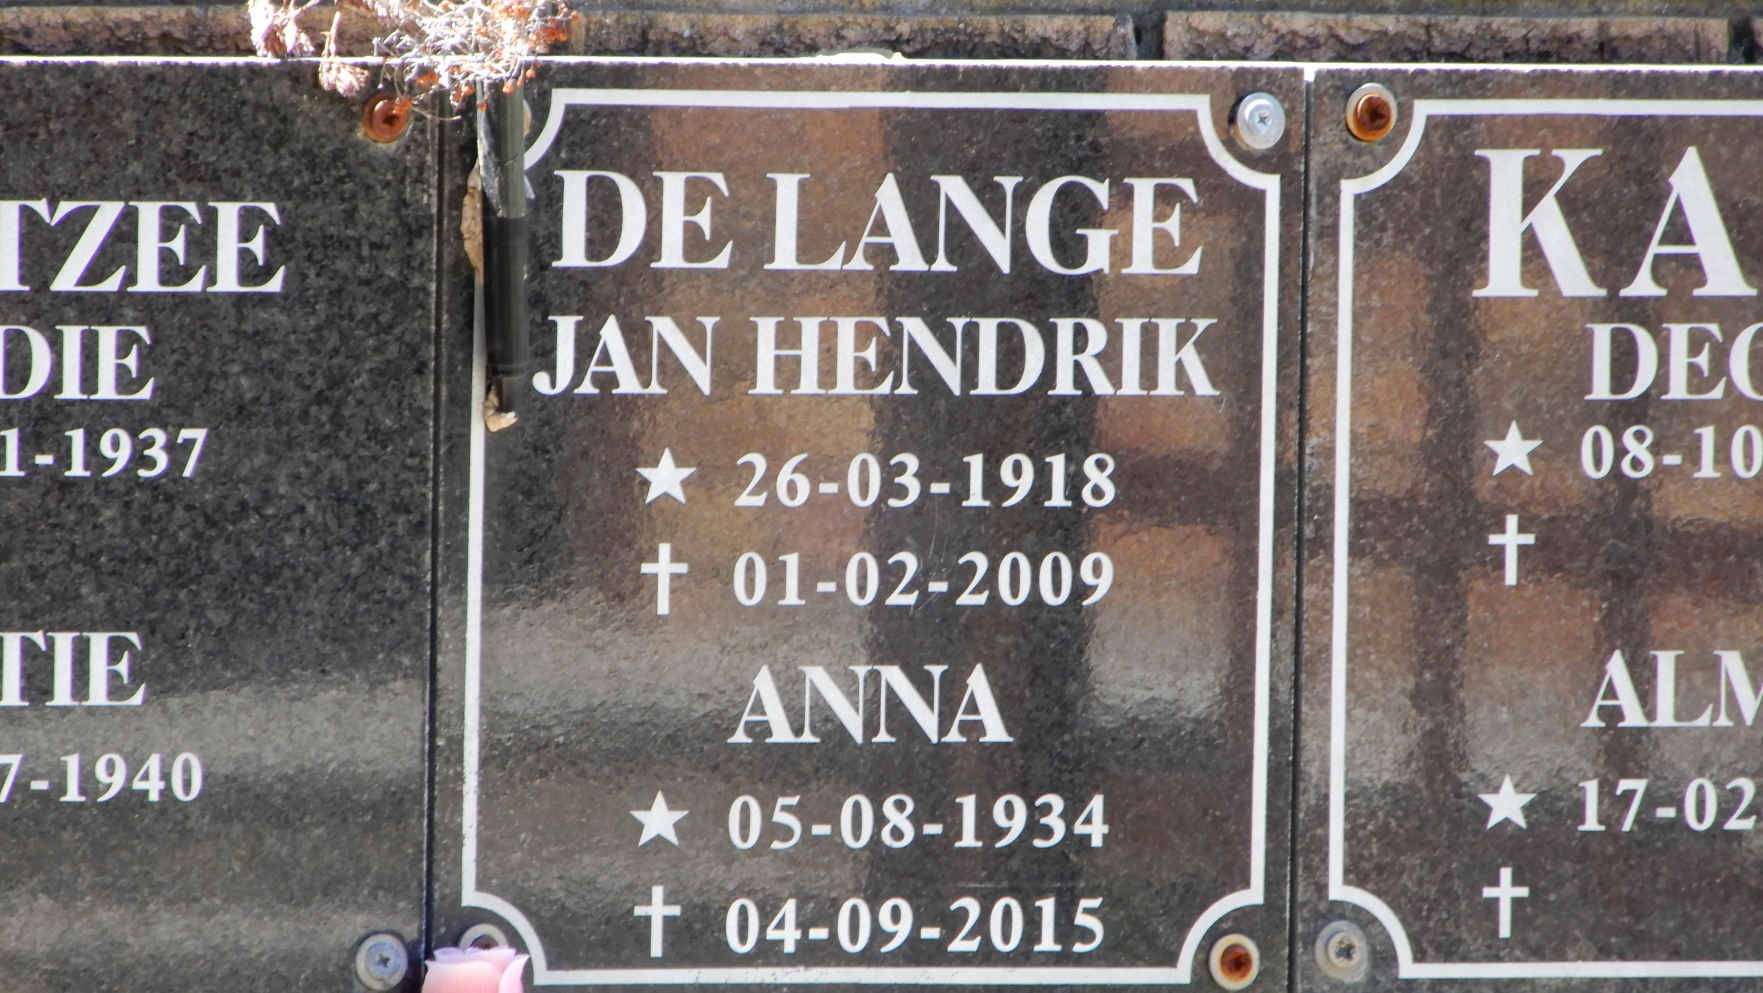 LANGE Jan Hendrik, de 1918-2009 & Anna KAPP nee BARNARD 1934-2015